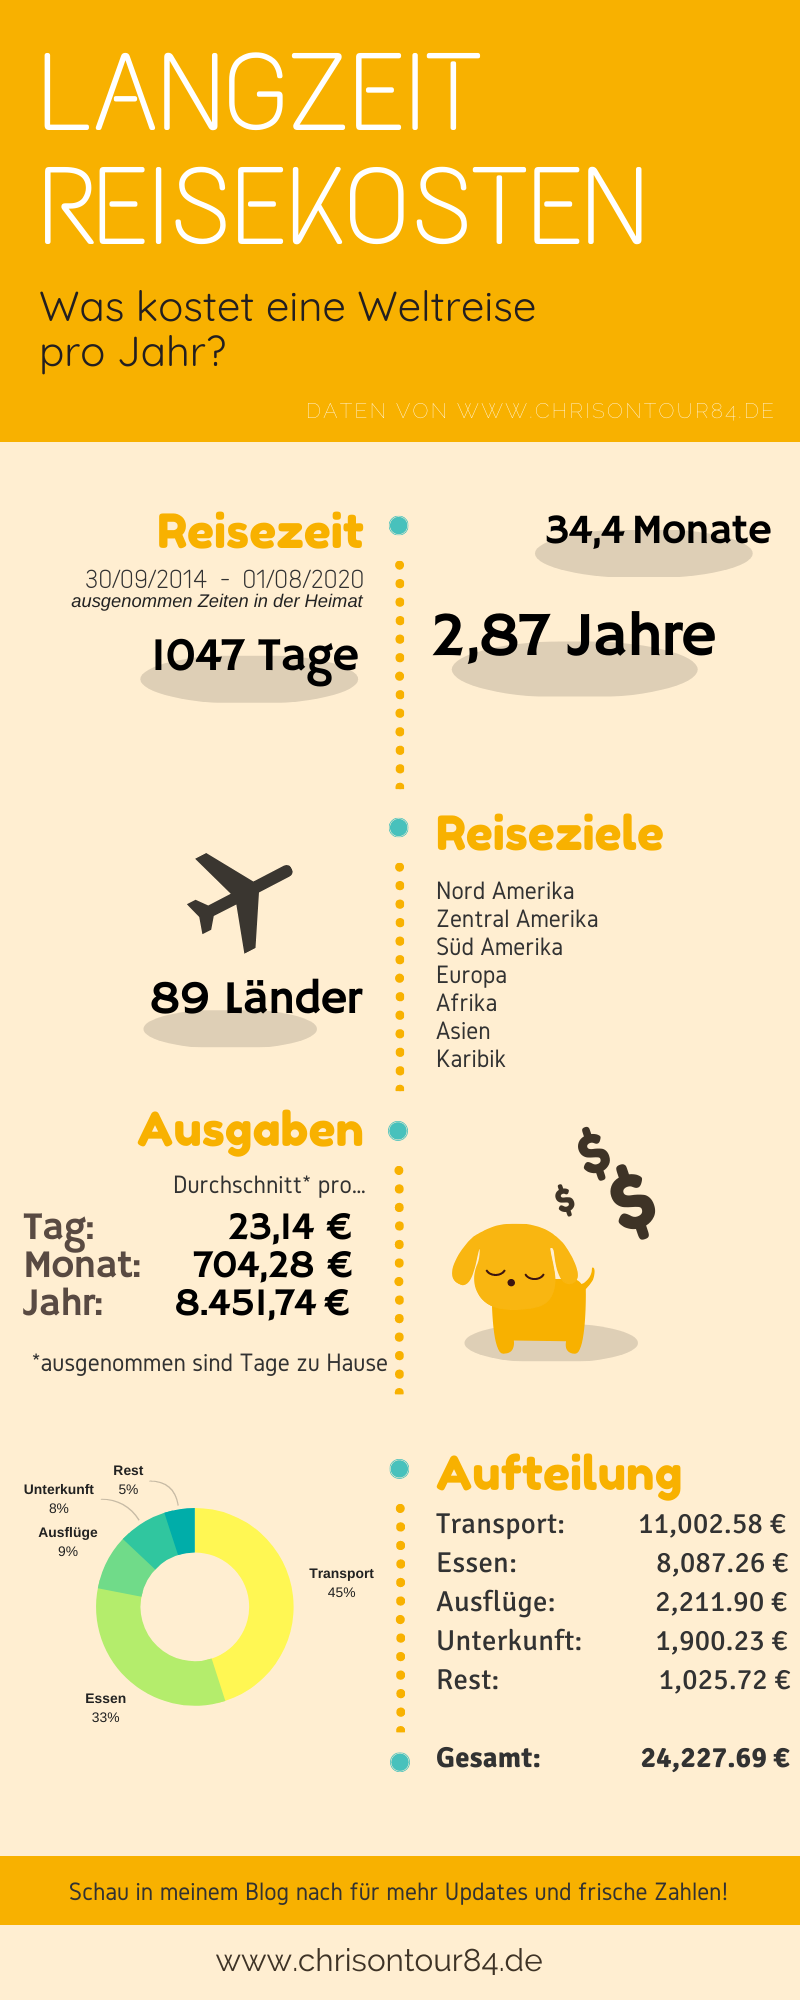 reisekosten infographic